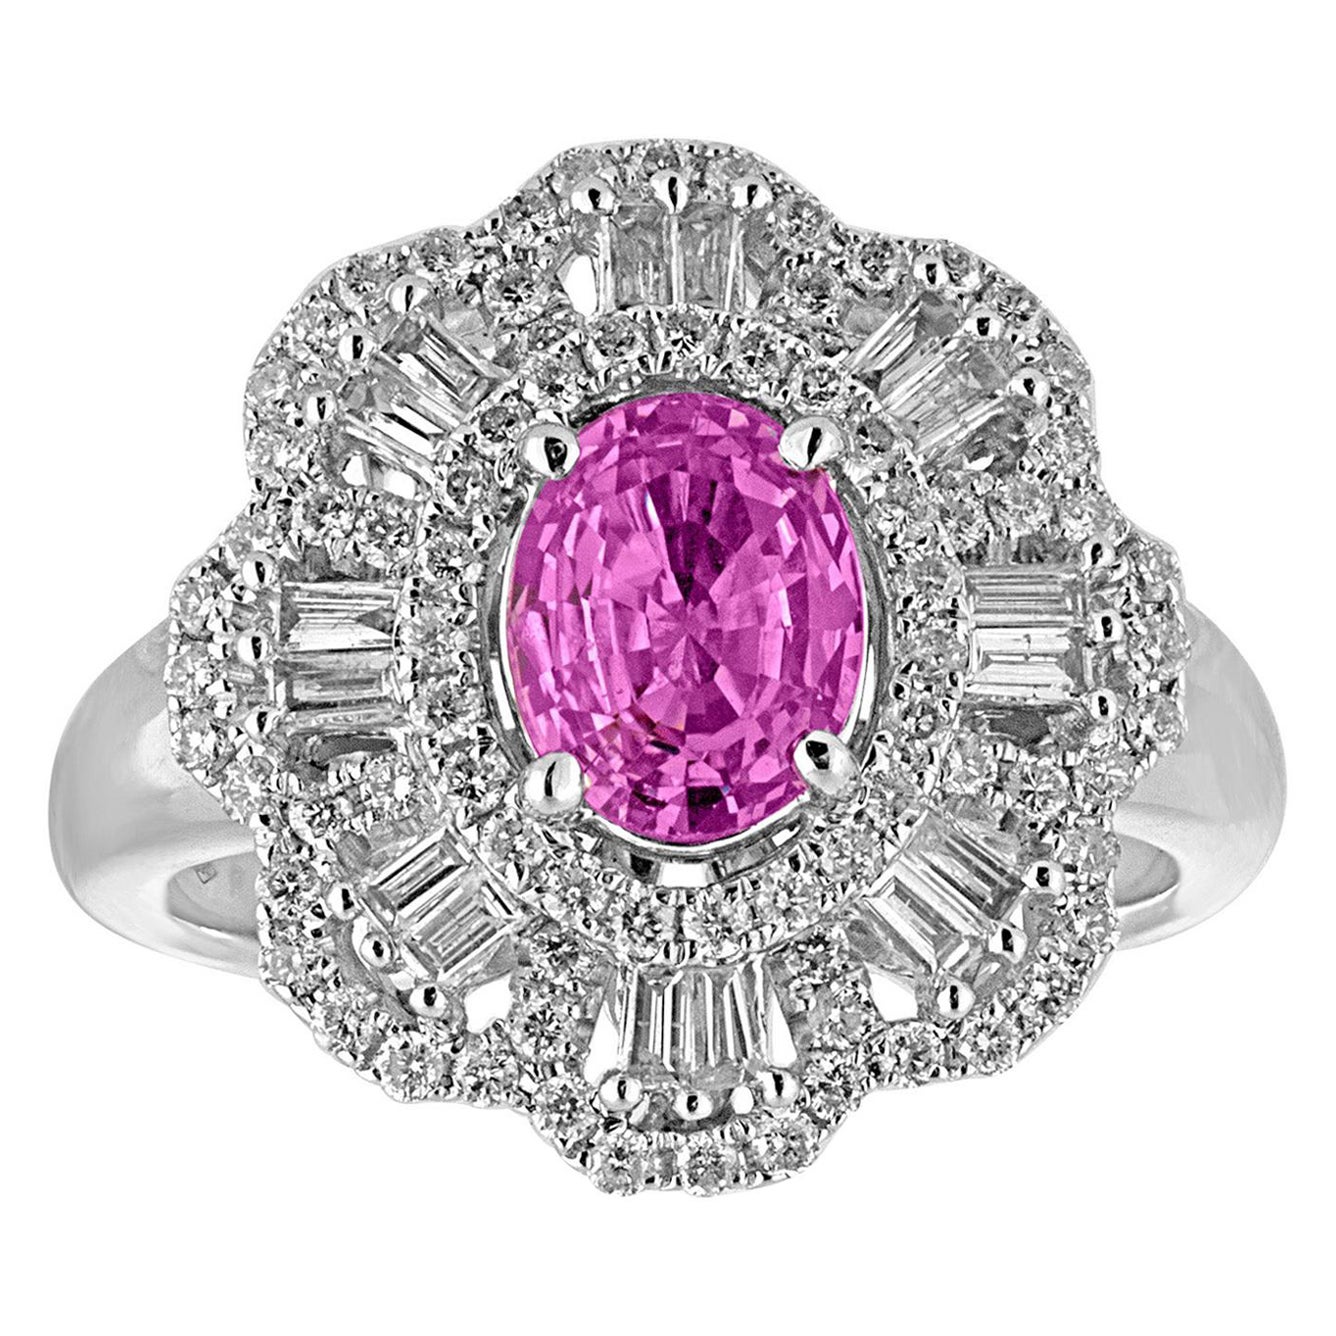 Goldring mit zertifiziertem 1,27 Karat ovalem rosa Saphir und Diamant